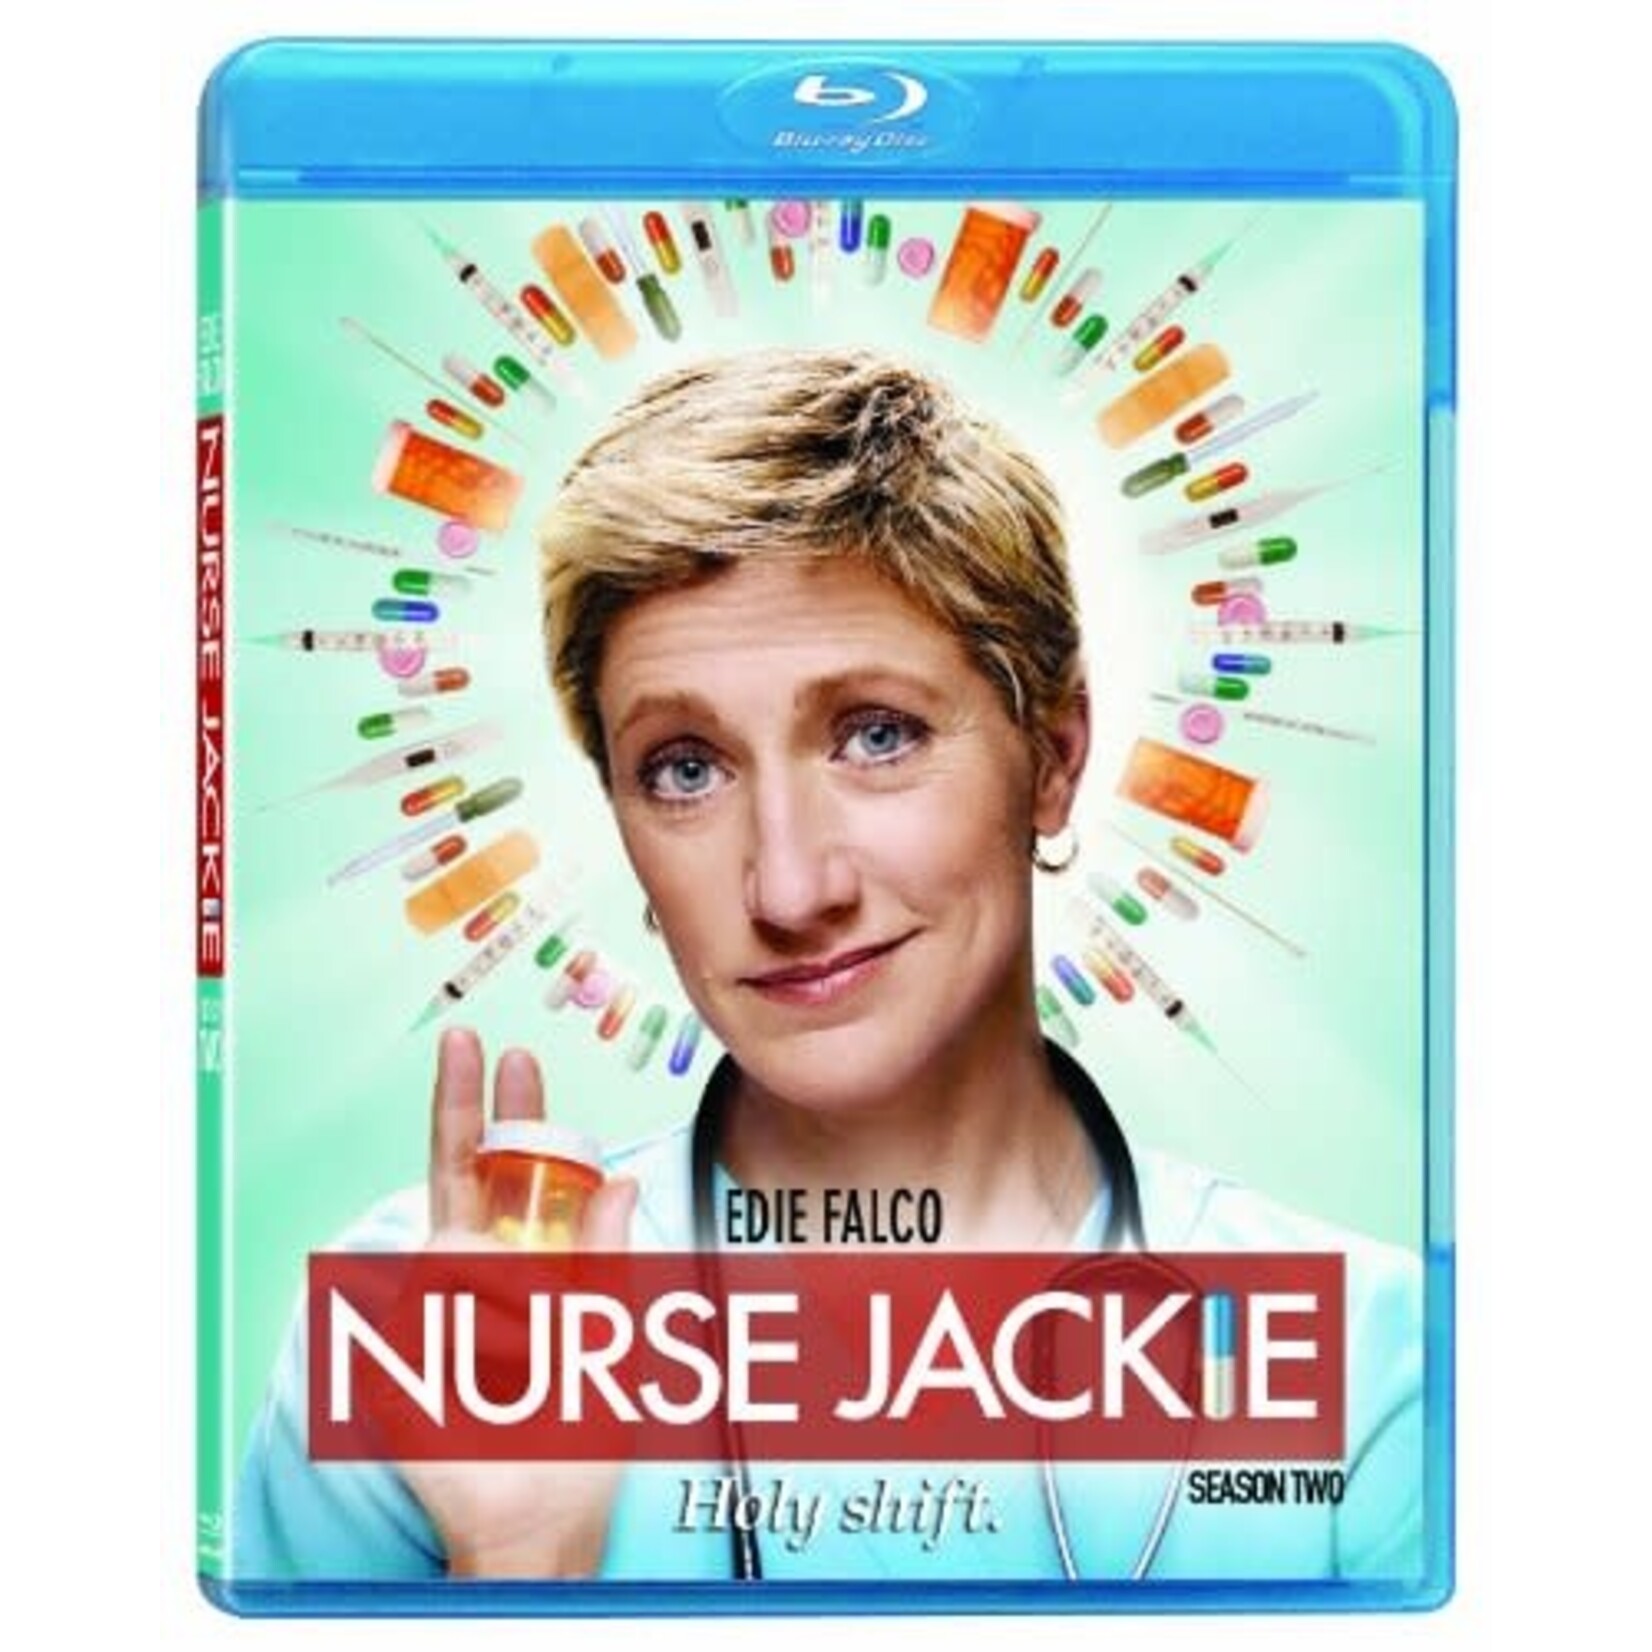 Nurse Jackie - Season 2 [USED BRD]